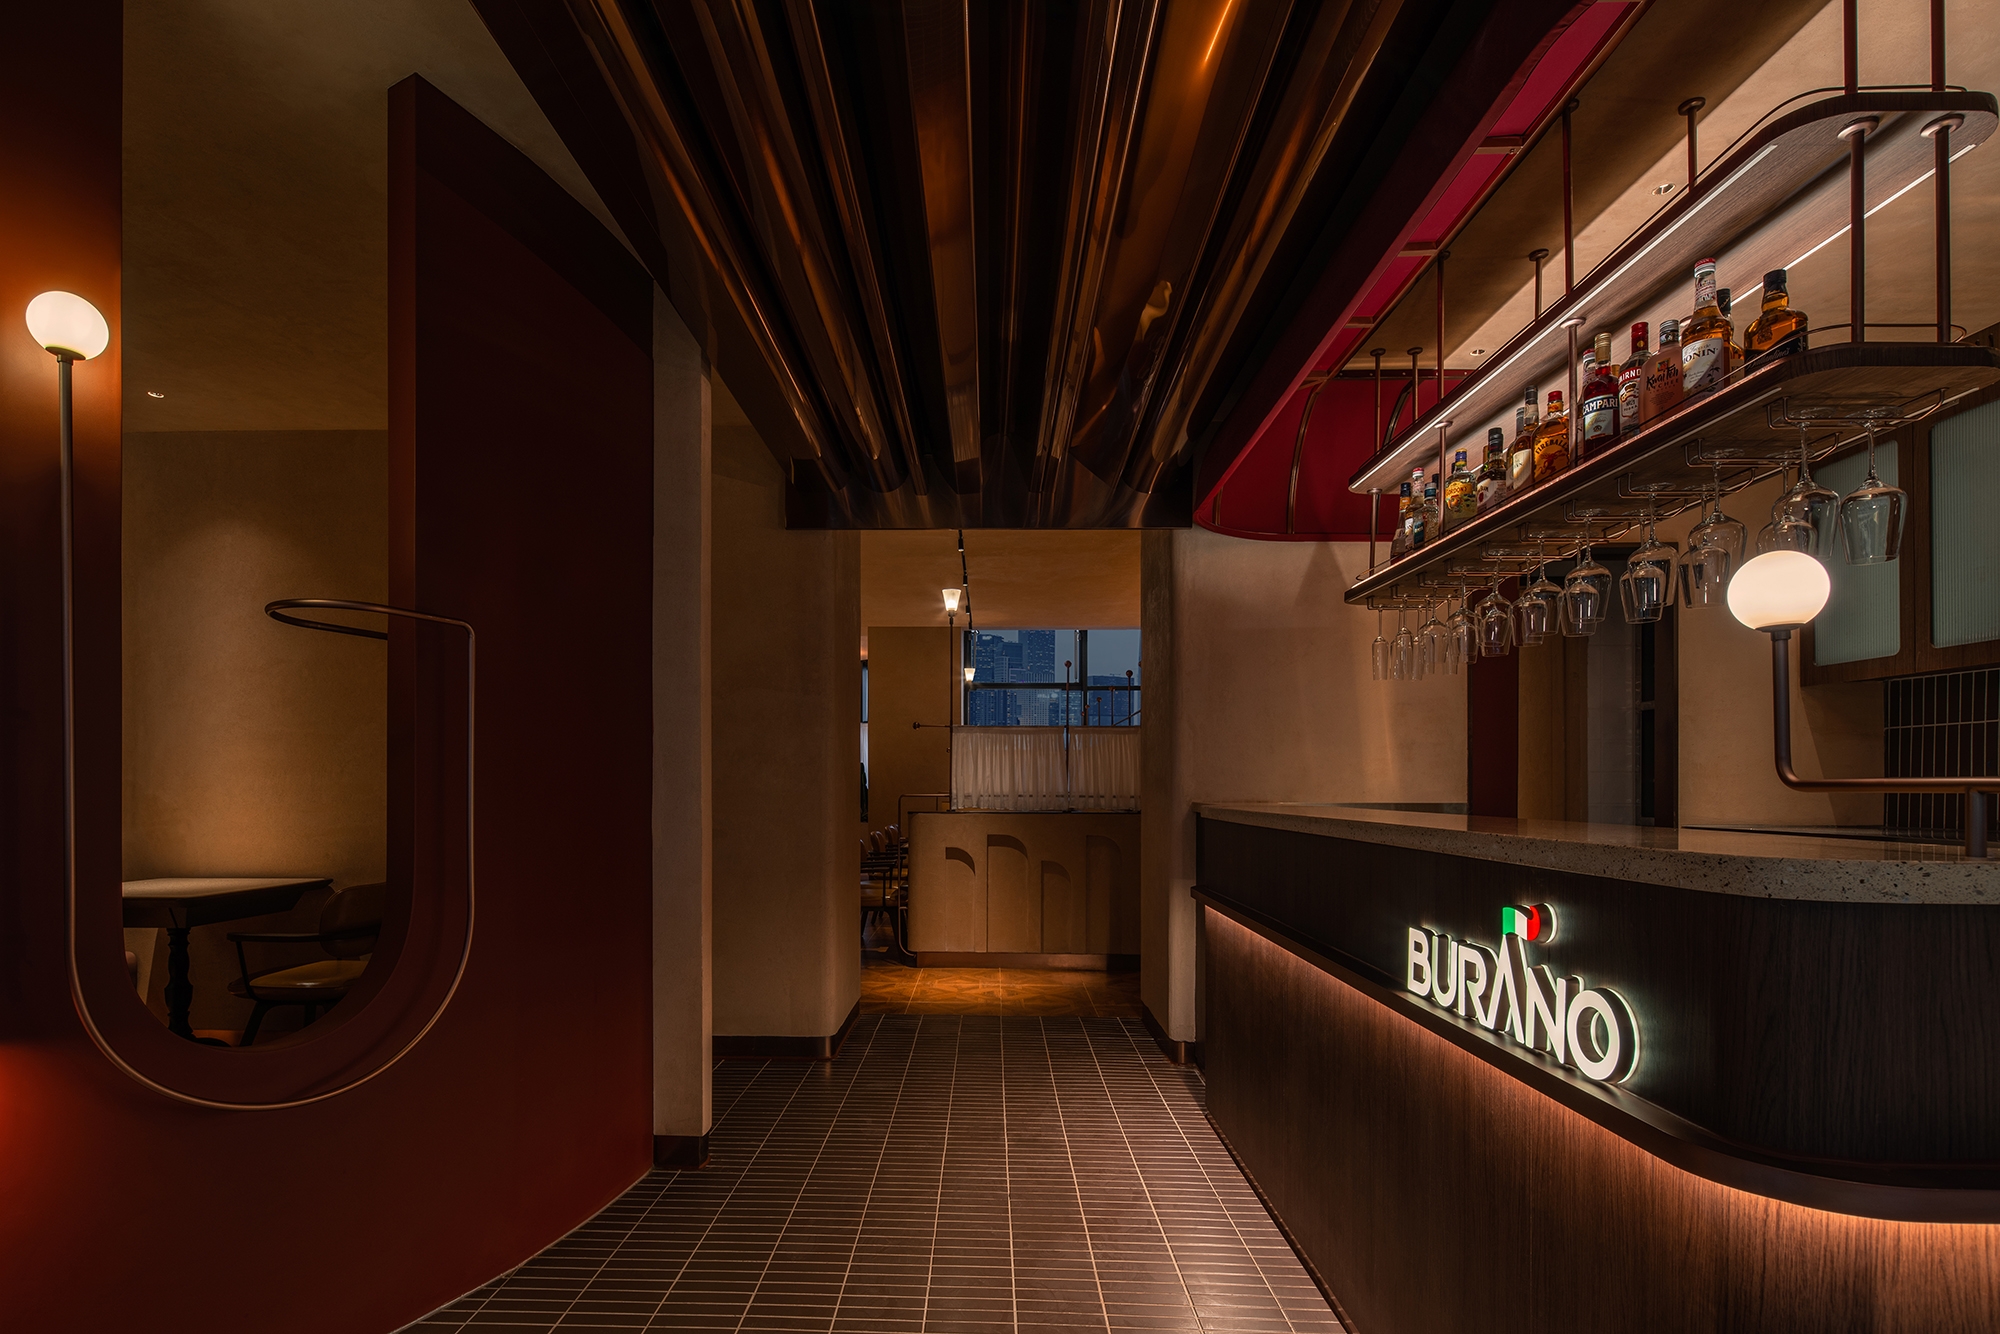 名城商城BURANO意大利餐厅|ART-Arrakis | 建筑室内设计的创新与灵感